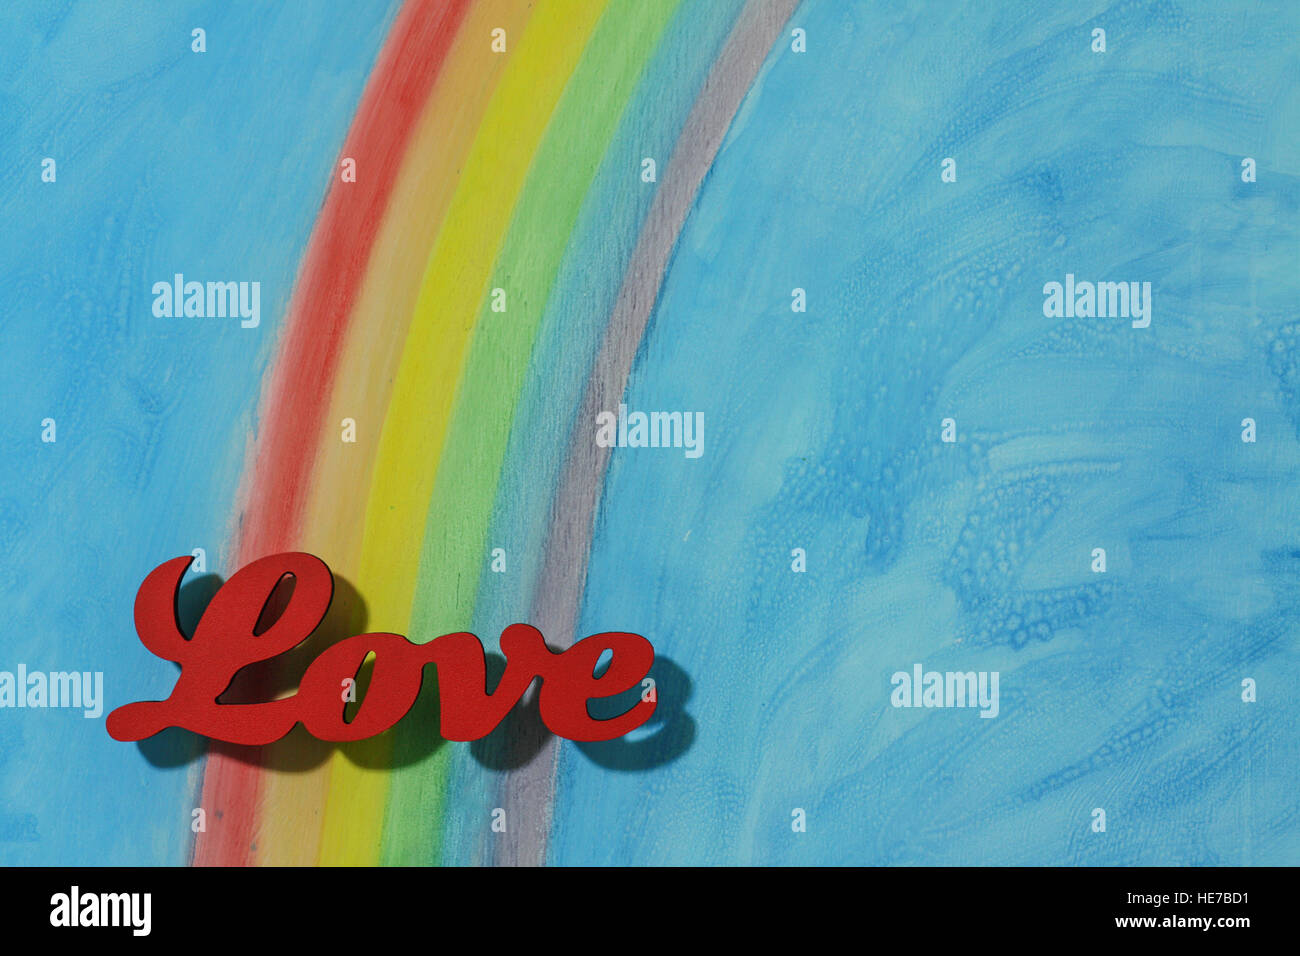 Das Wort Liebe mit einem Hintergrund-Regenbogen, veranschaulicht das Konzept der Liebe, Lust, Lust und Freude in ein Querformat. Stockfoto